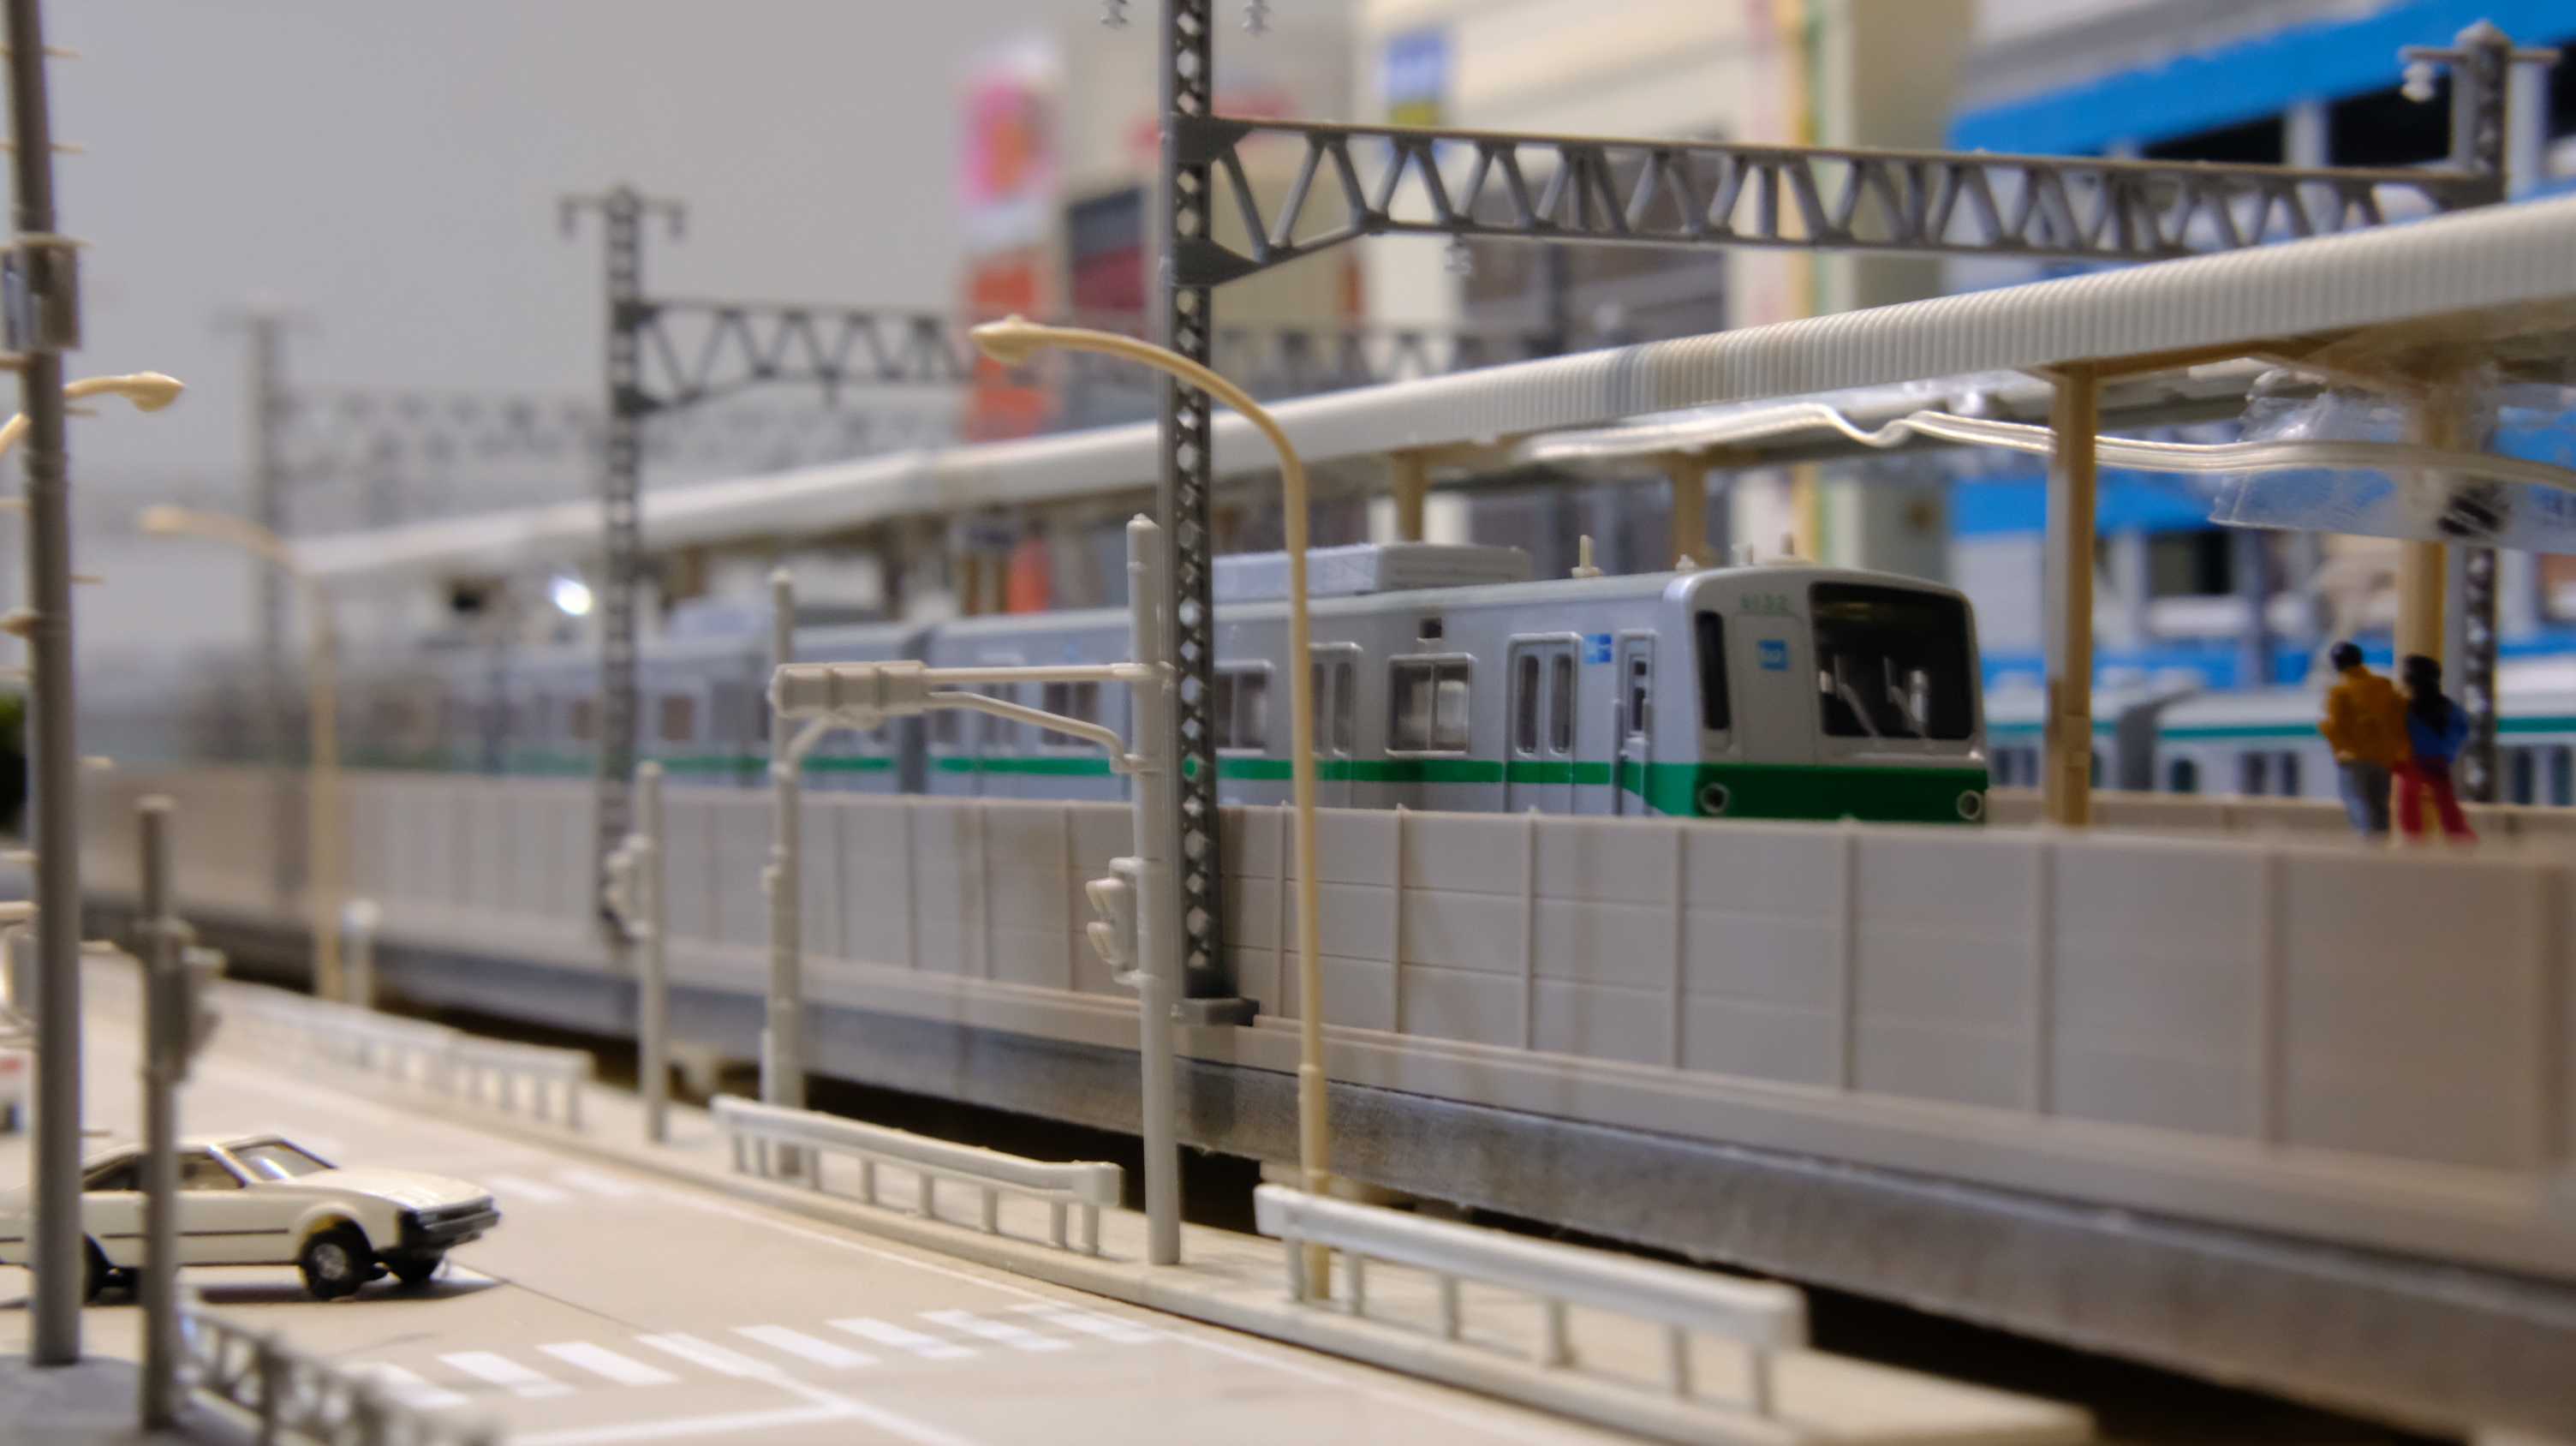 マイクロエース 東京メトロ 6000系 更新車 - 鉄道模型